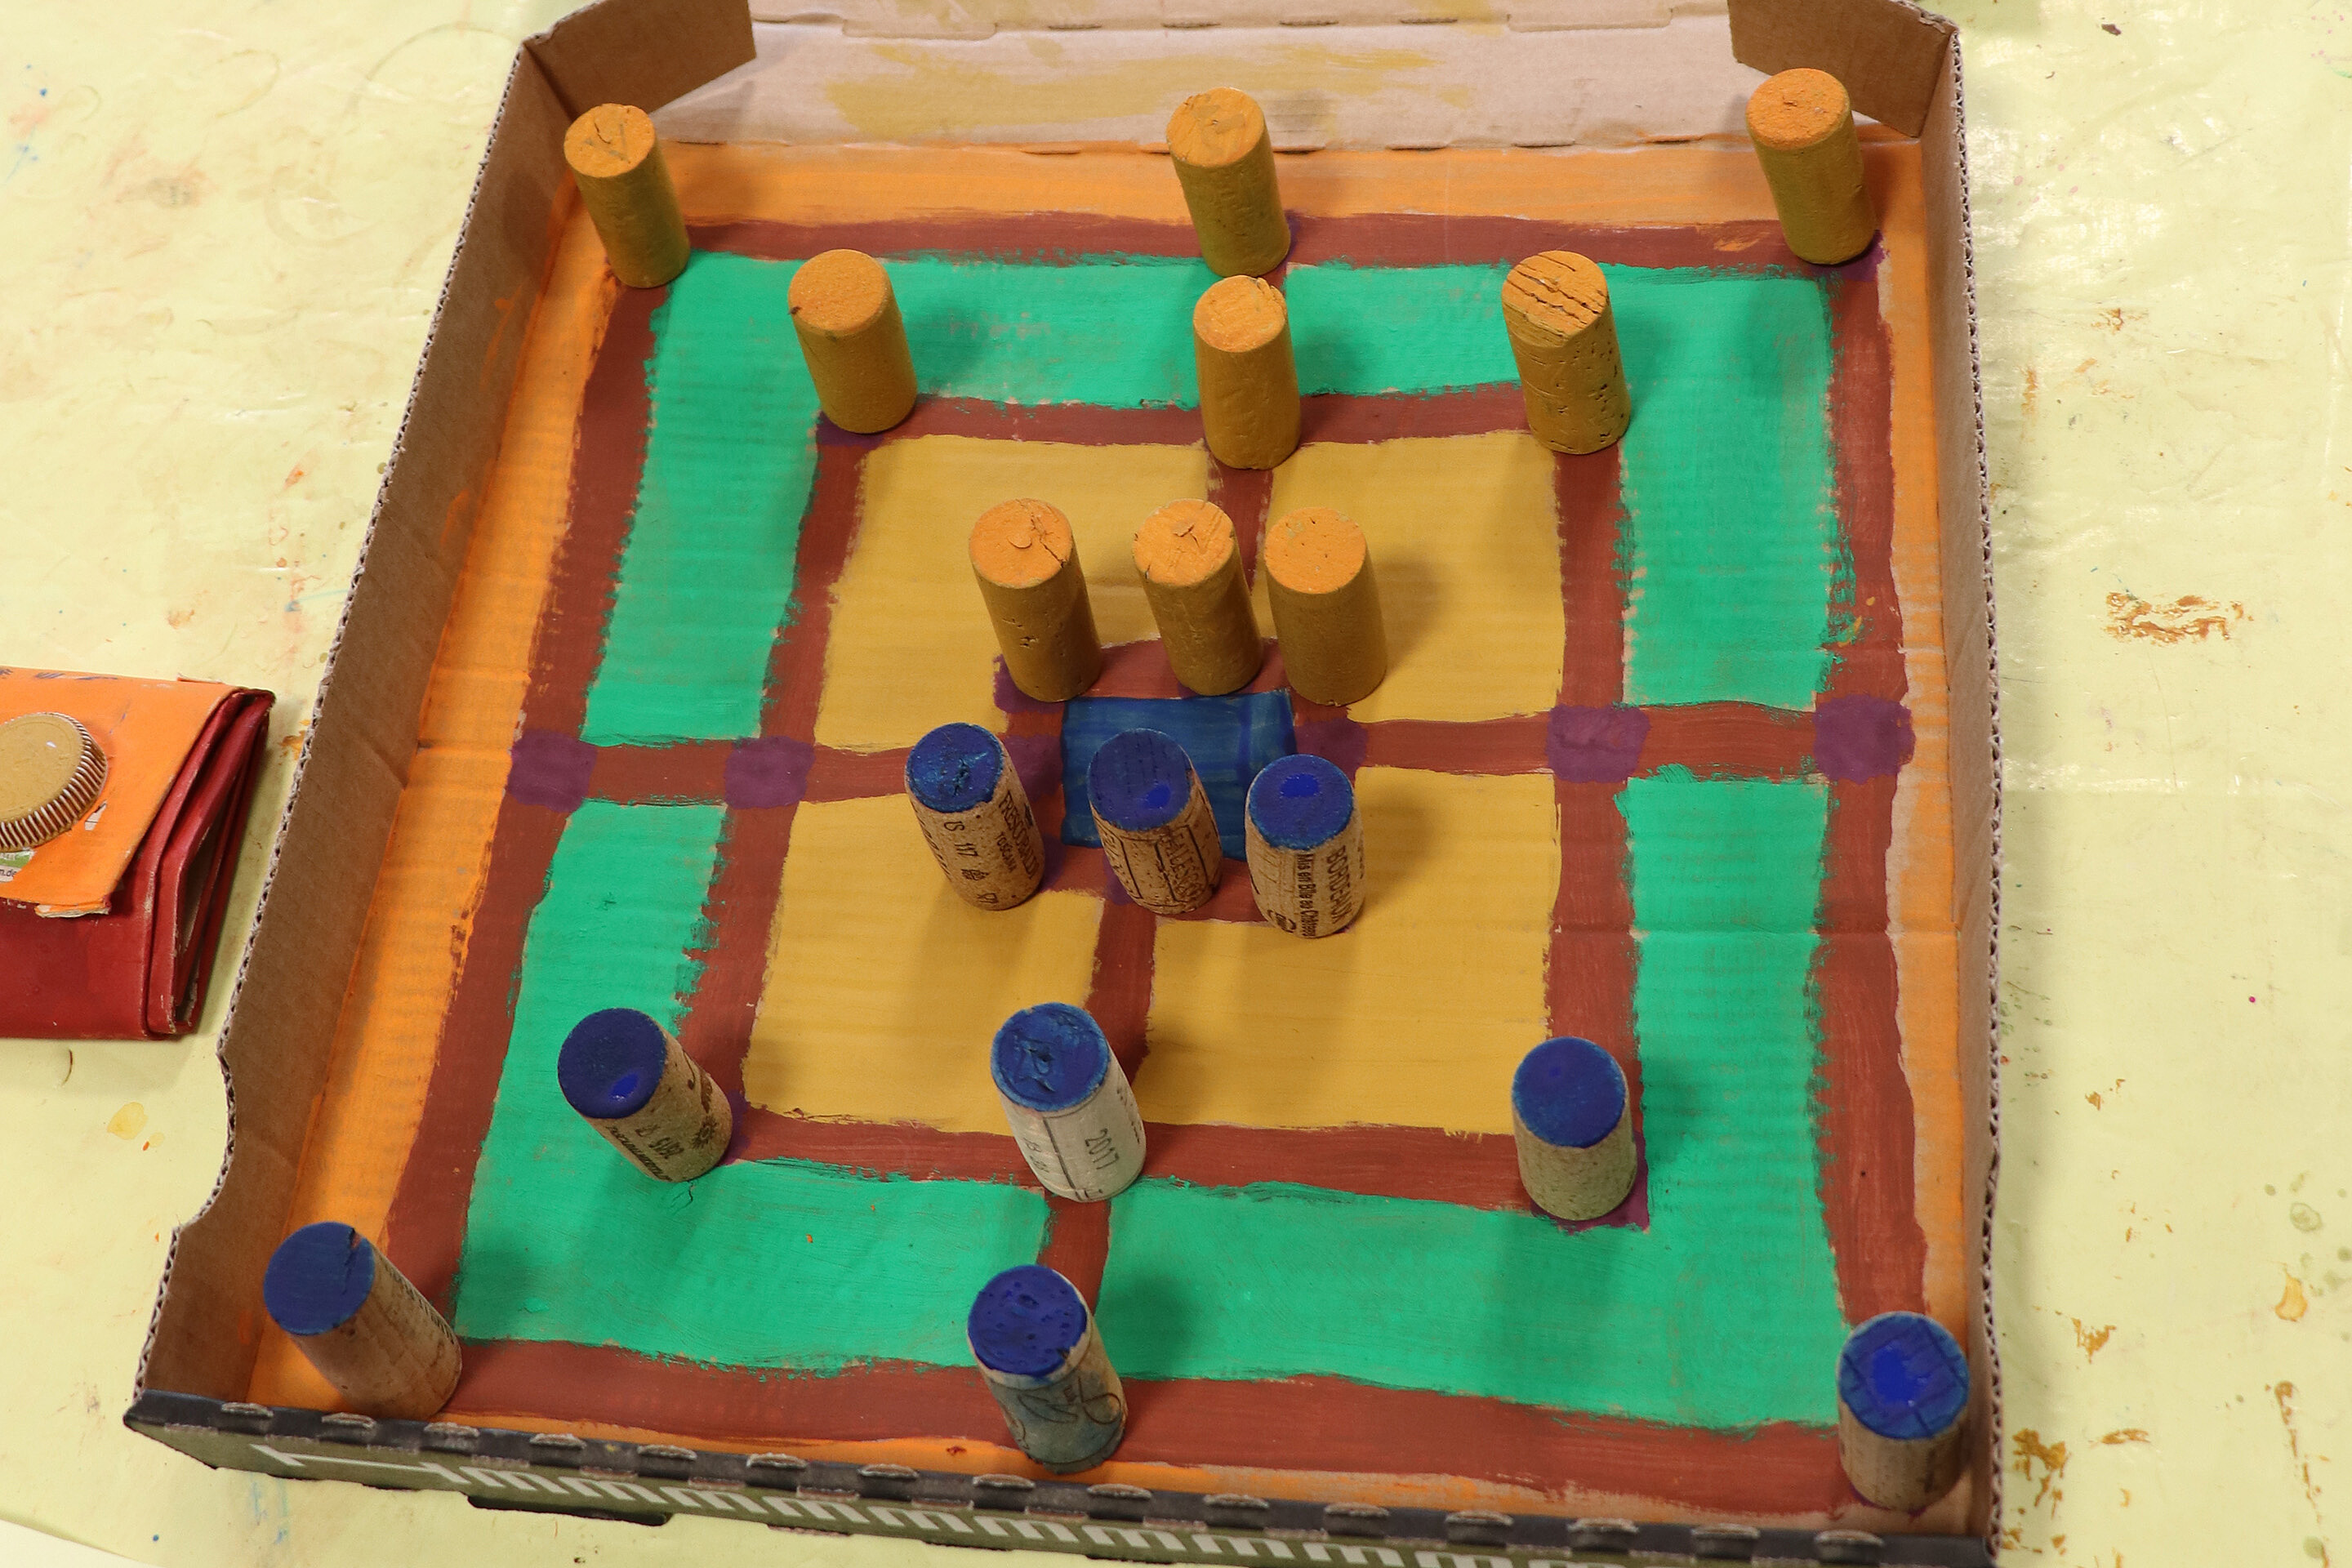 Das Mühle-Spiel stellten die Kinder aus einem Pizza-Karton, Korken und Farbe selbst her.